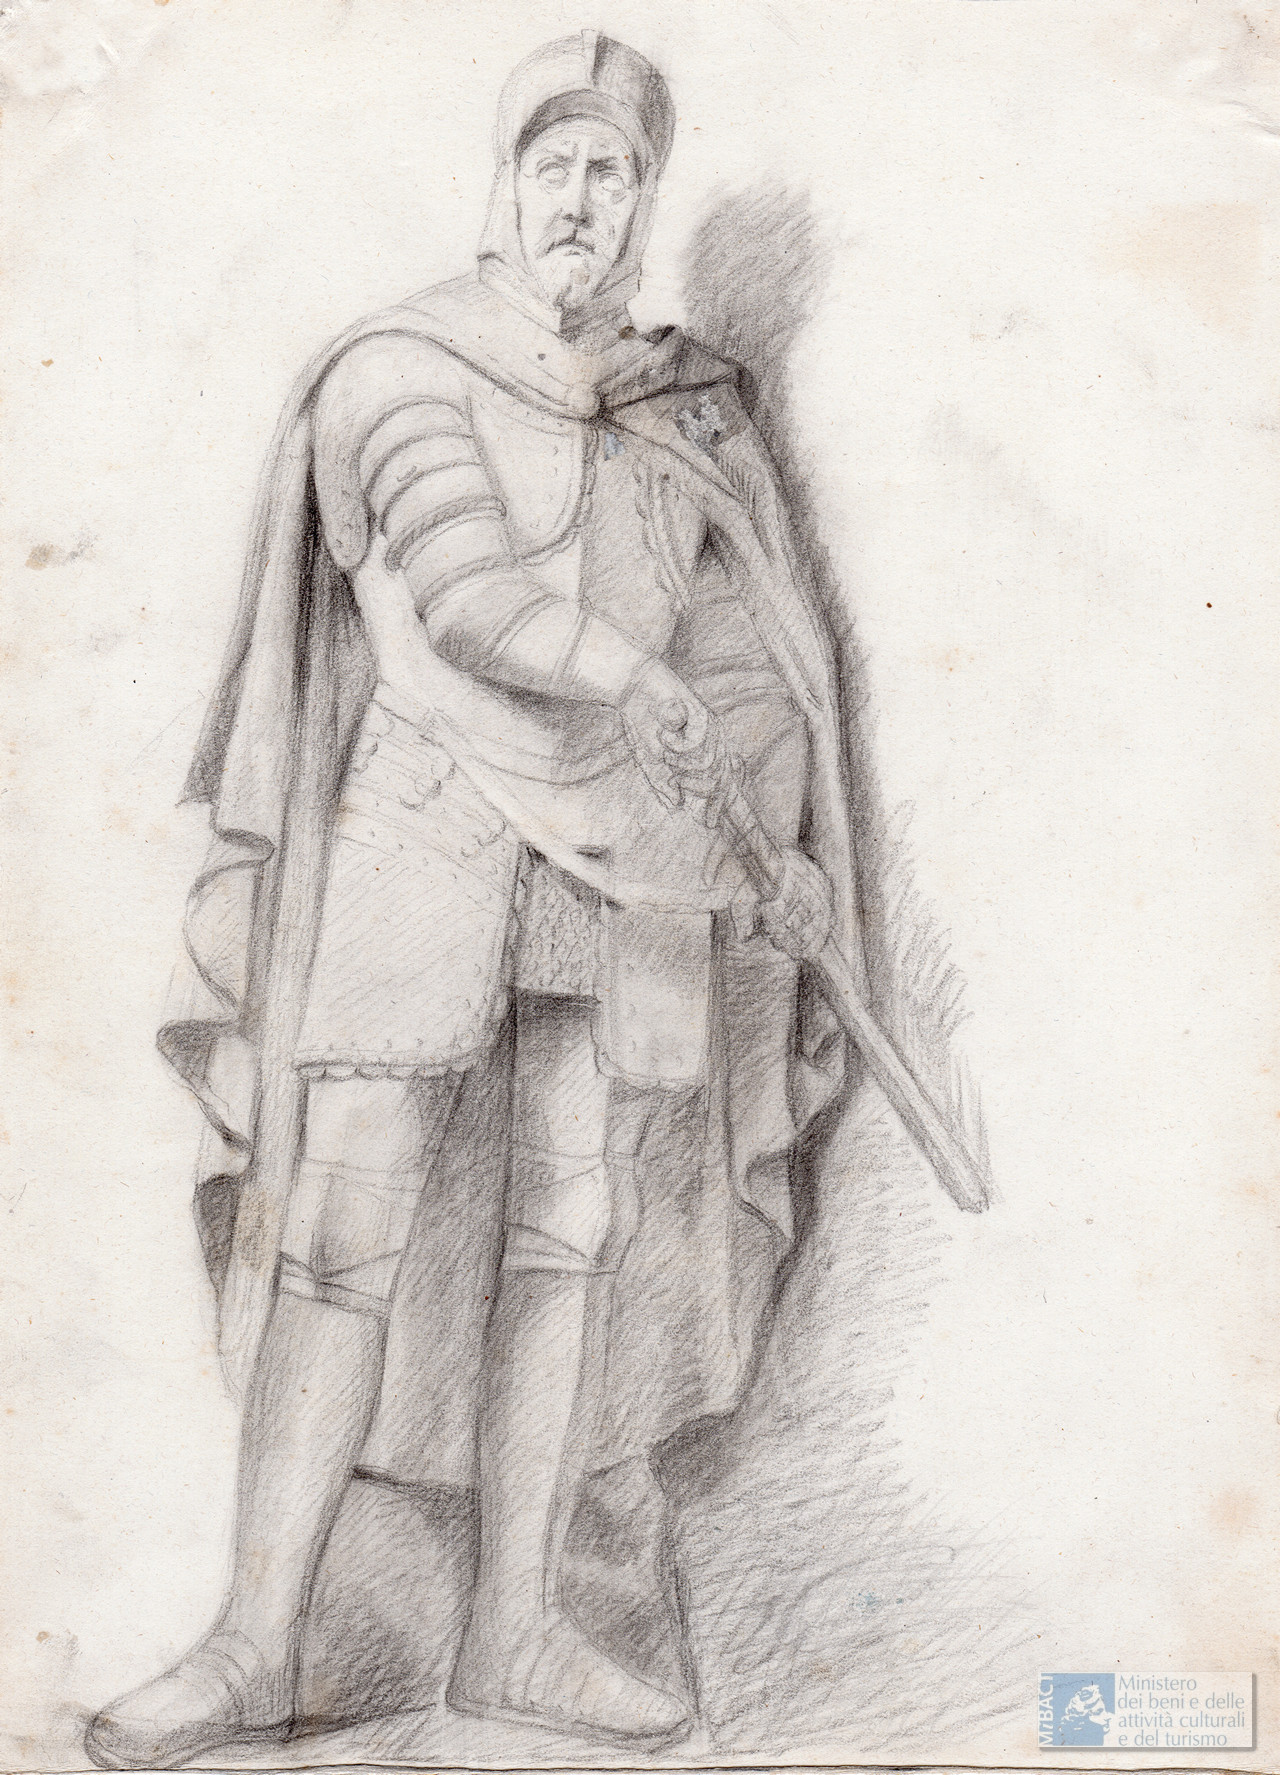 Disegno a matita della statua di Gian Domenico Albani